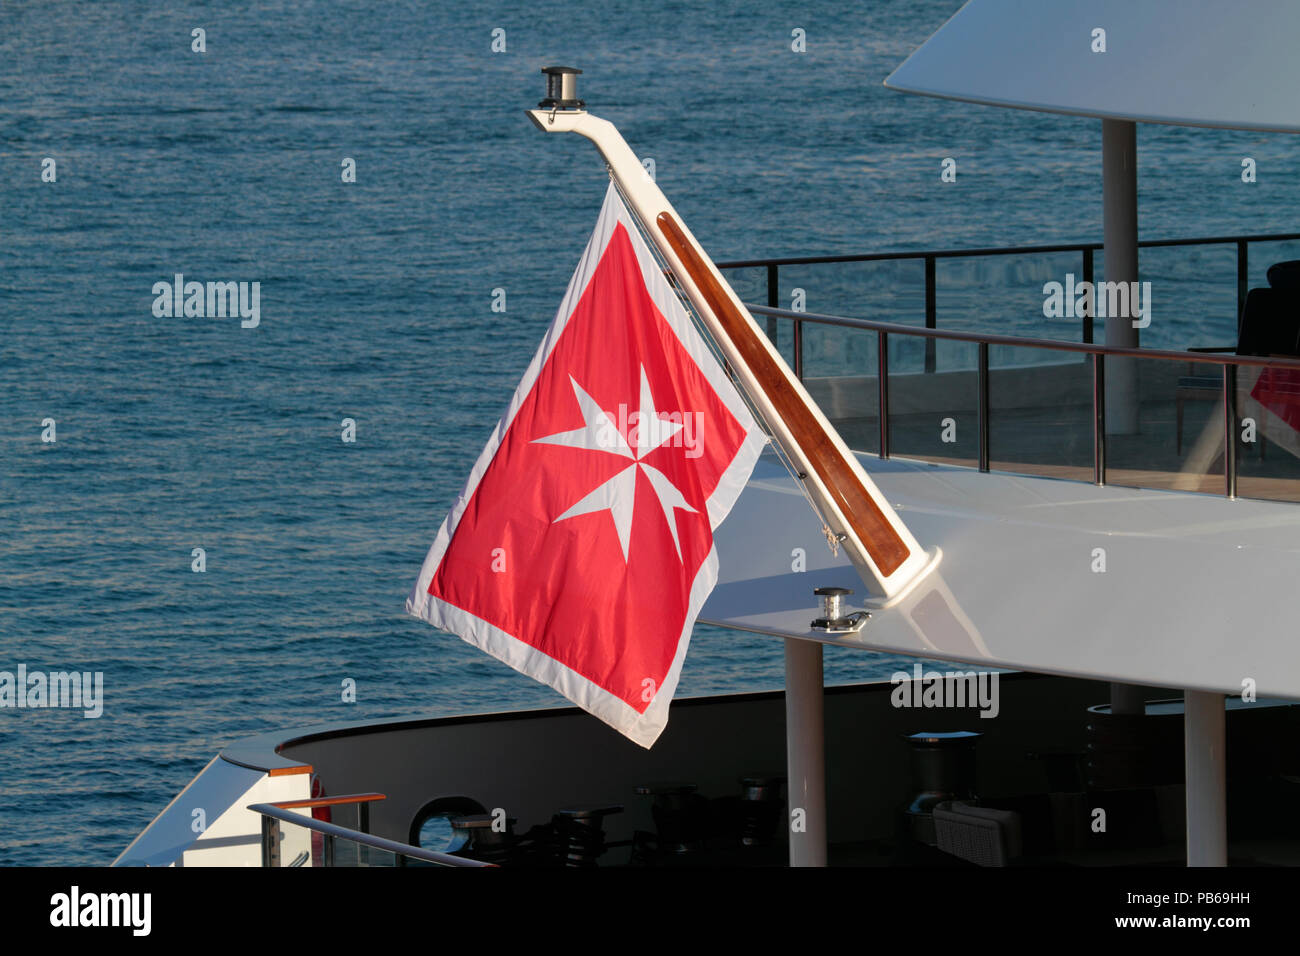 Il mercante bandiera o ensign civile di Malta sulla poppa della nave. Per Malta il trasporto marittimo registro è uno dei più grandi nell'UE. Foto Stock